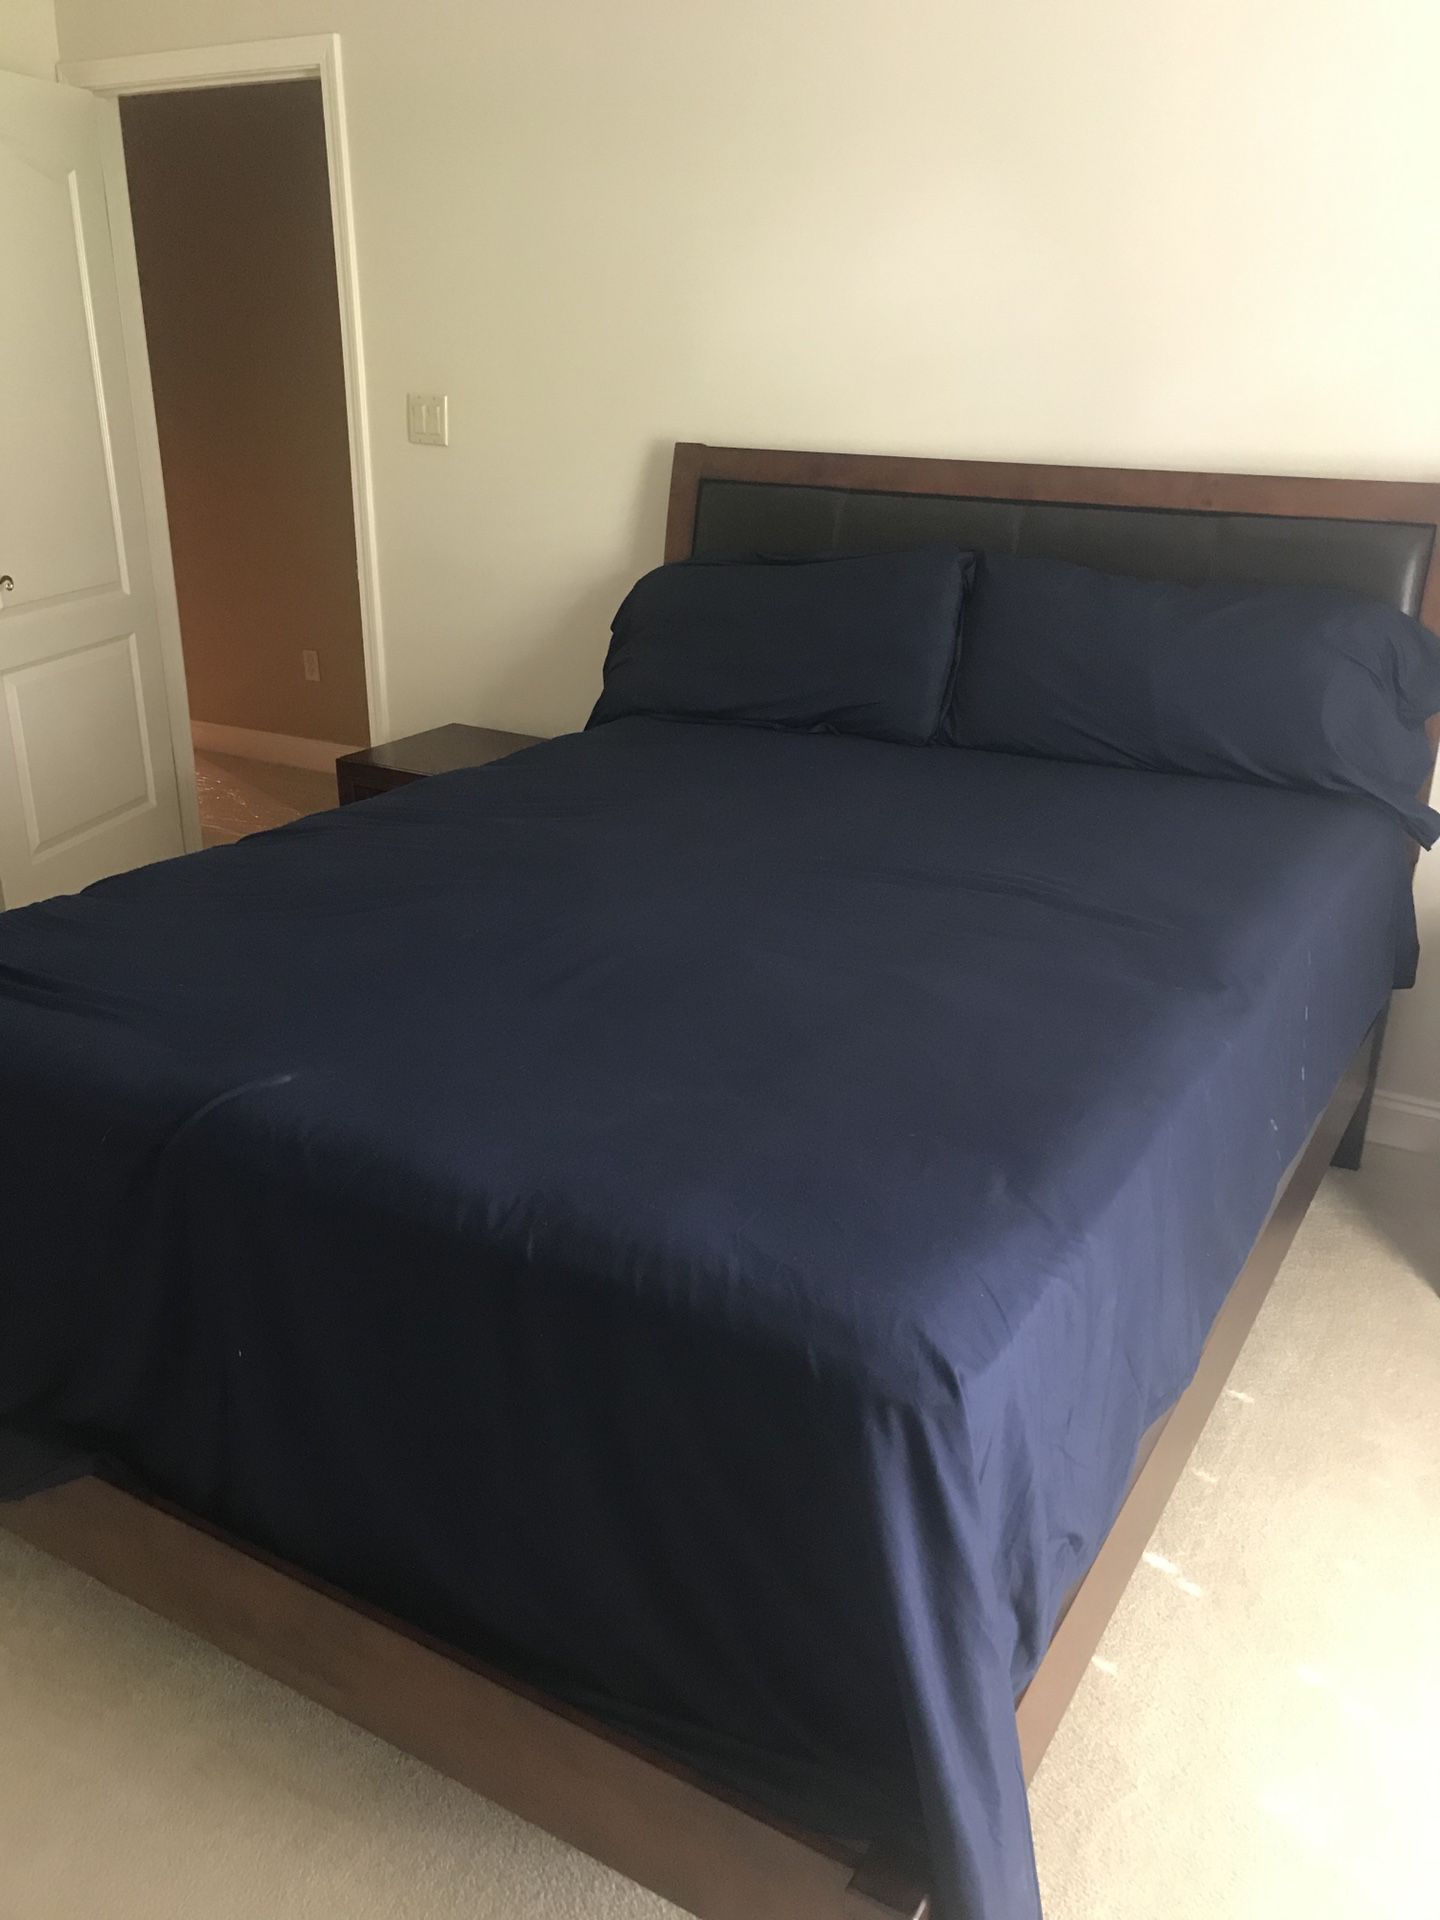 Queen Bed And 4 Piece Bedroom Set